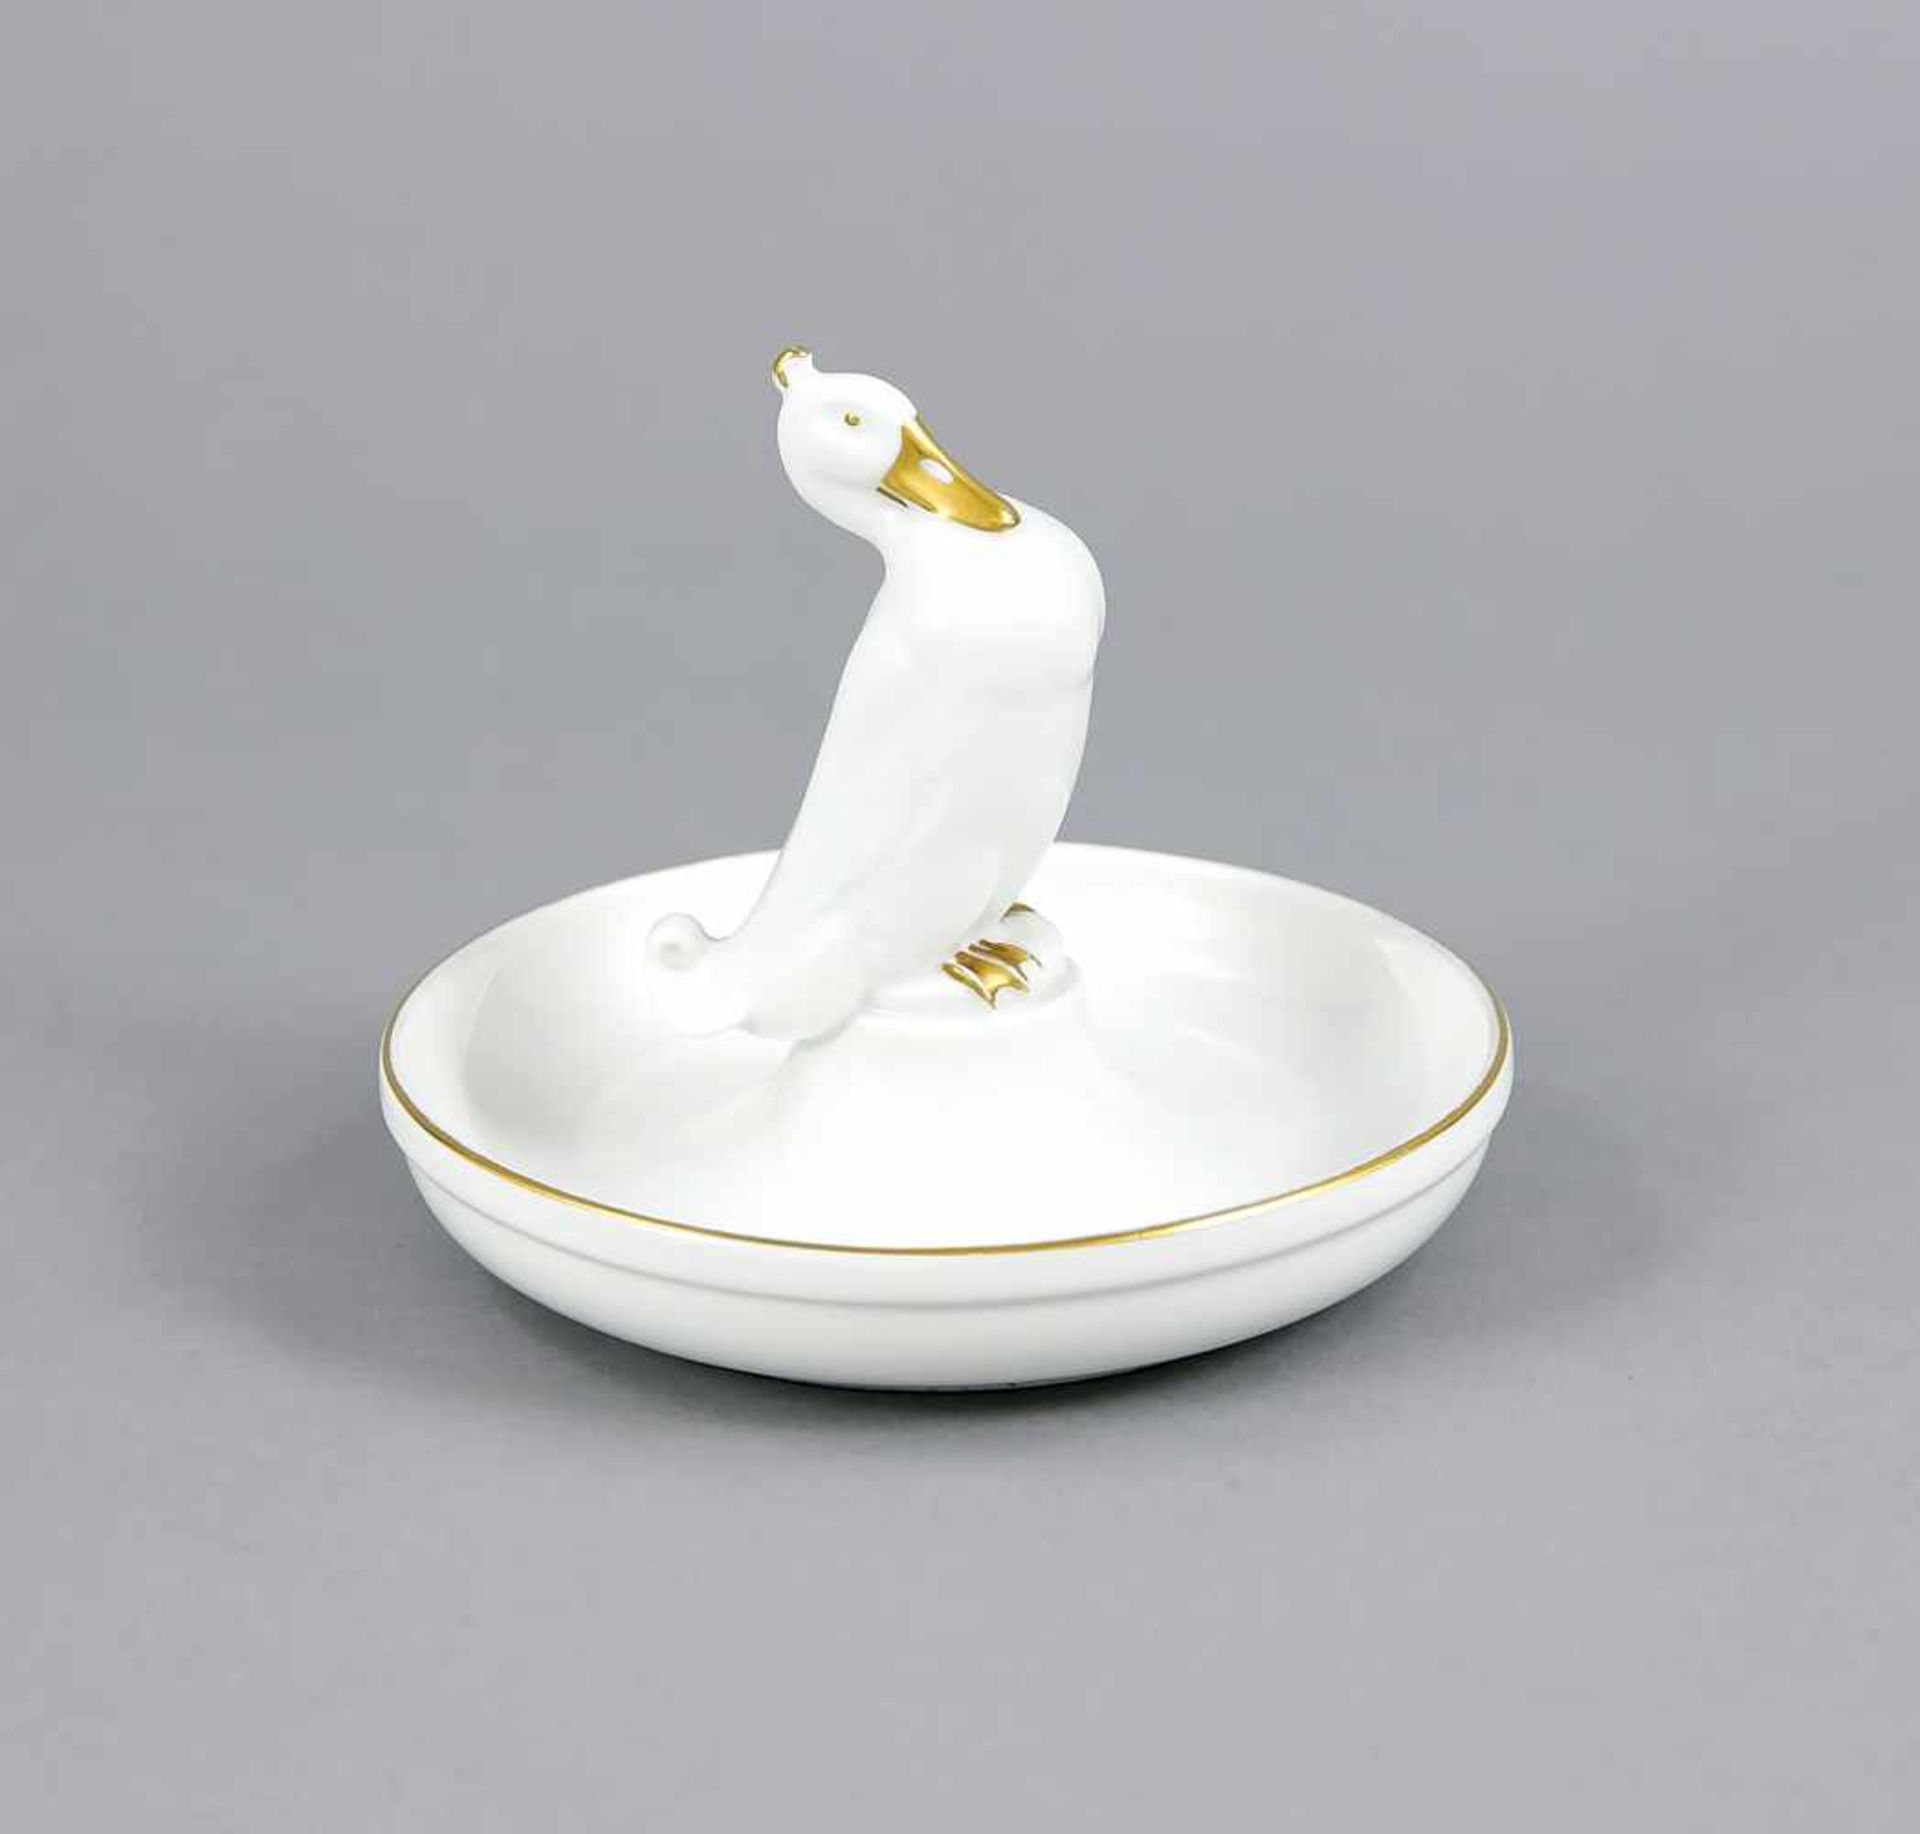 Schale mit Ente, Rosenthal, Selb, 1924, runde Schale, darin mittig stehende Ente, weiß,